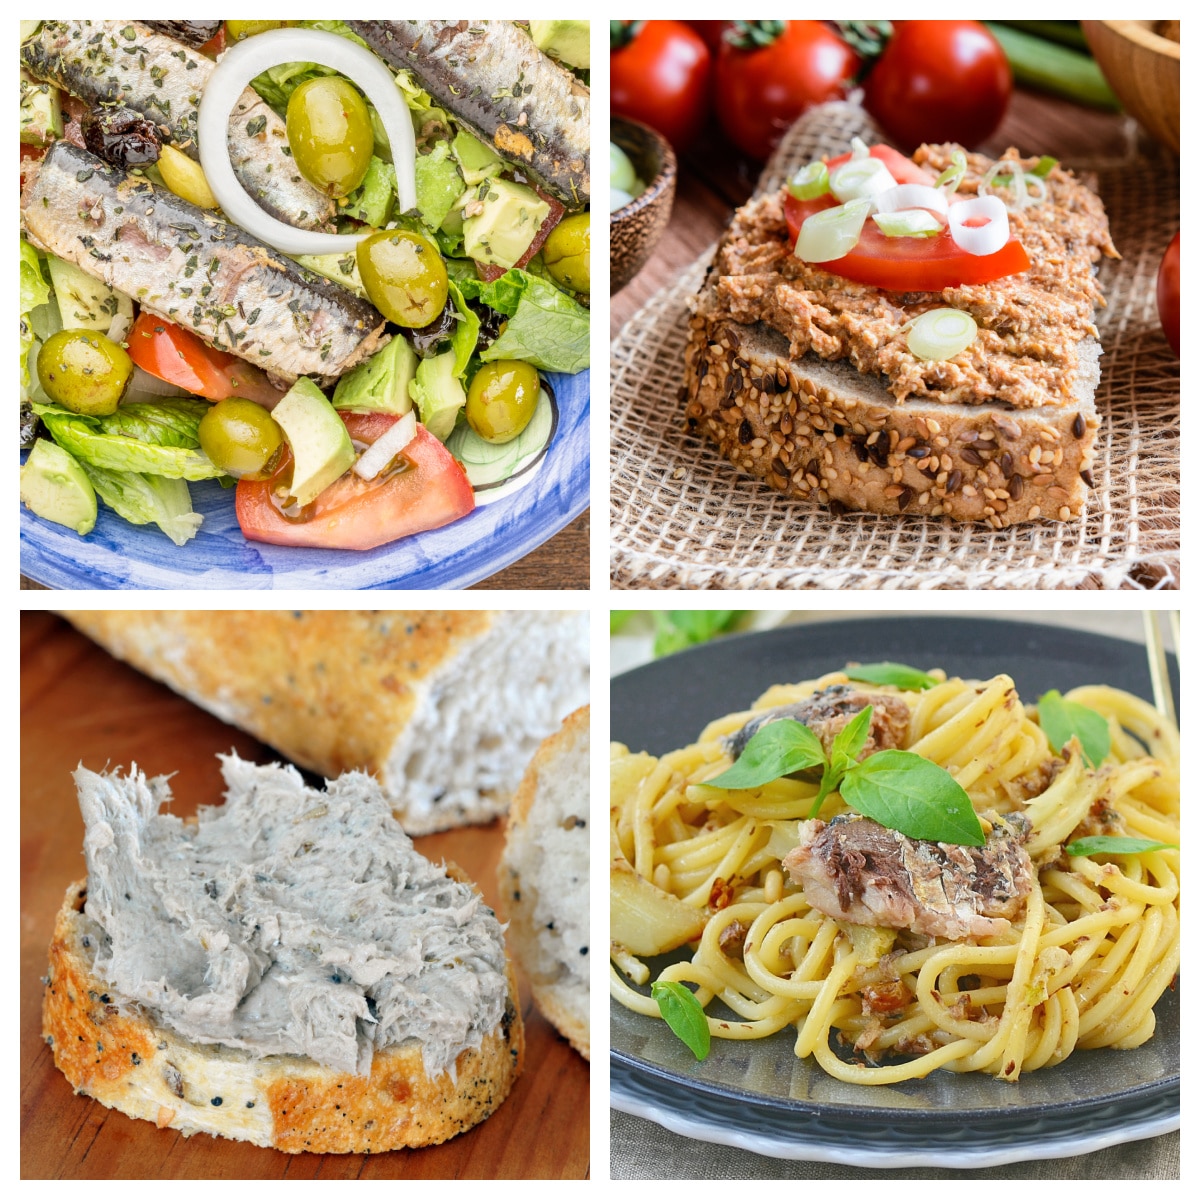 Sardine salad, sardine pate, and sardine pasta.